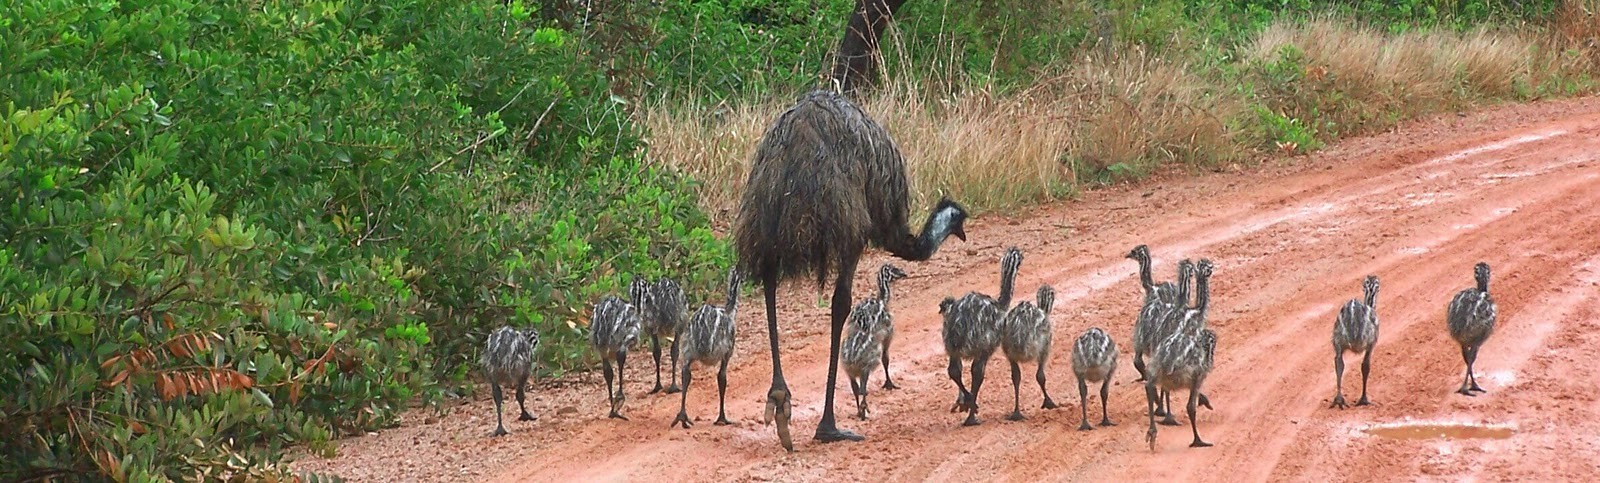 Emu rodiny